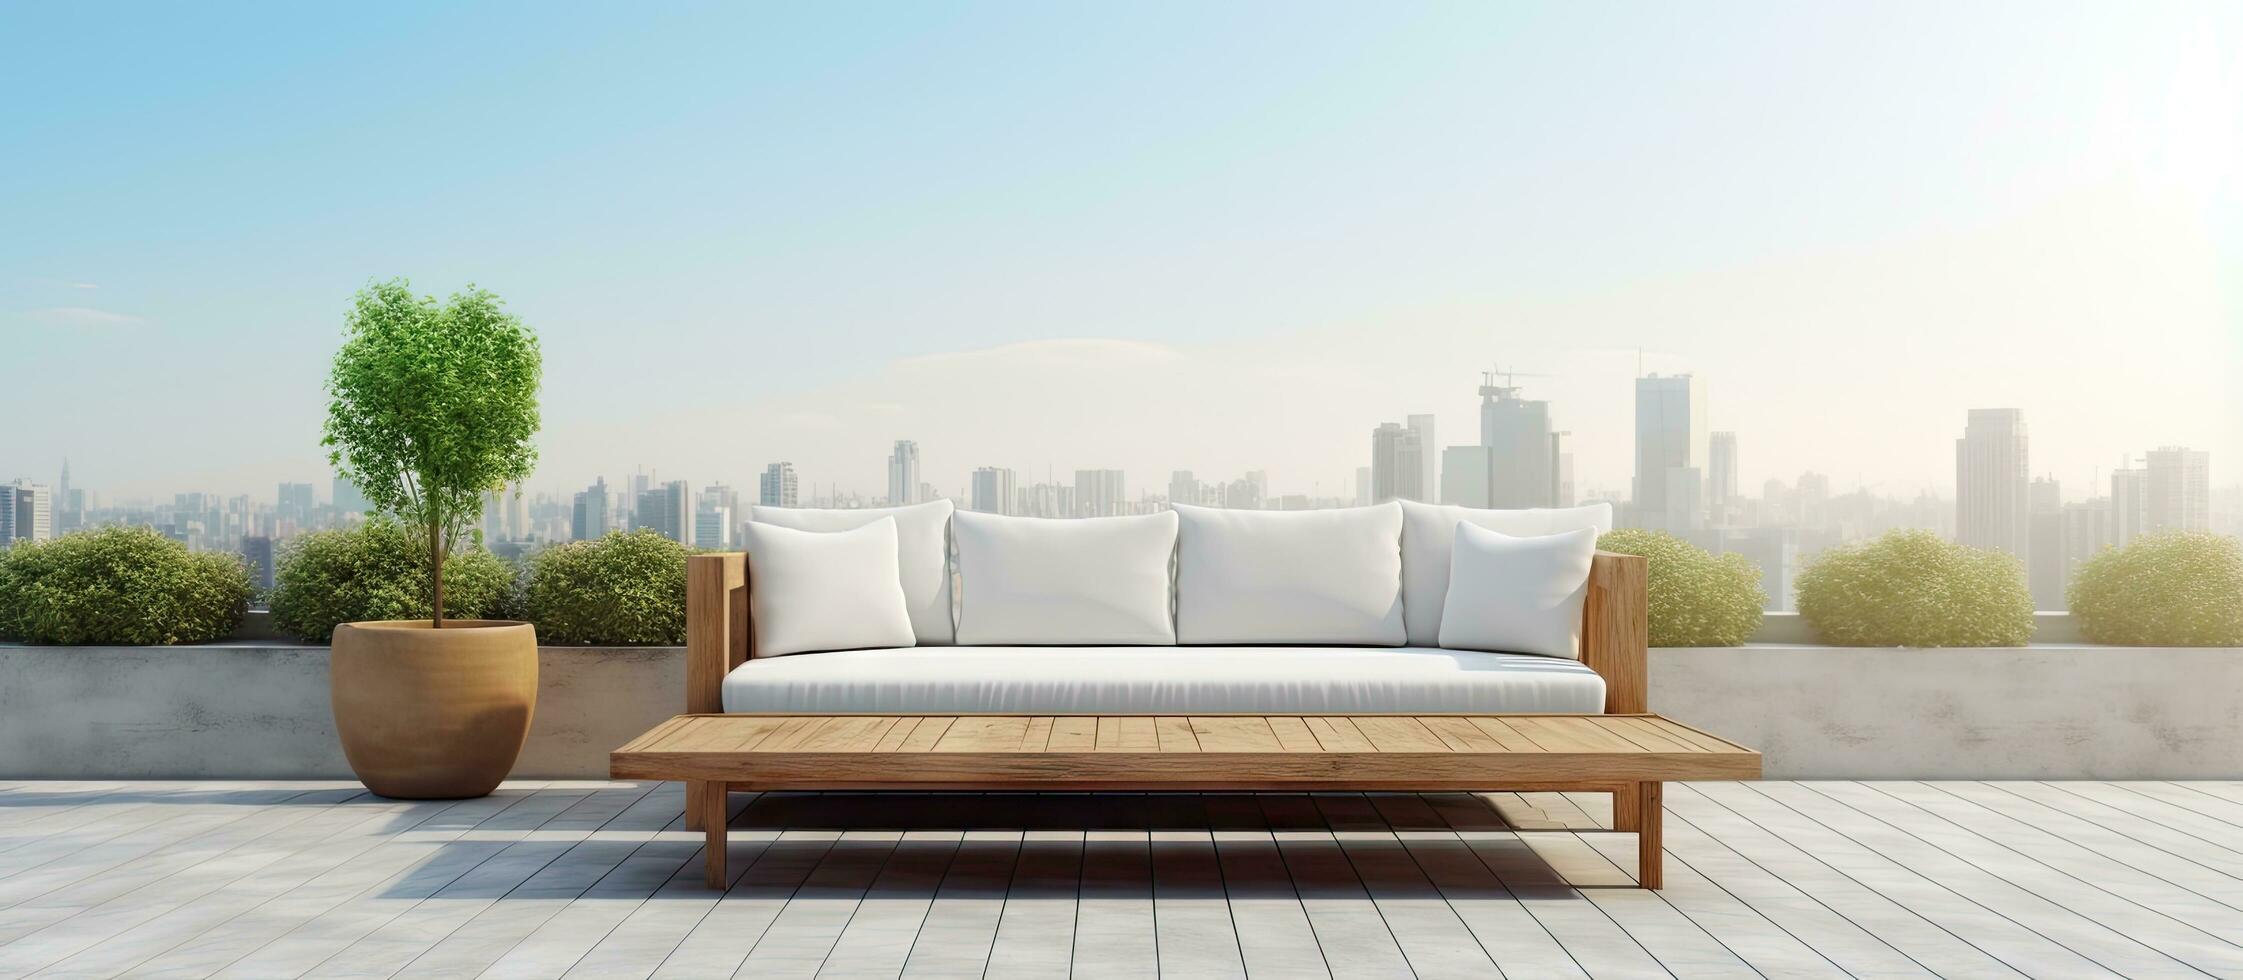 construção terraço com uma sofá e café mesa foto